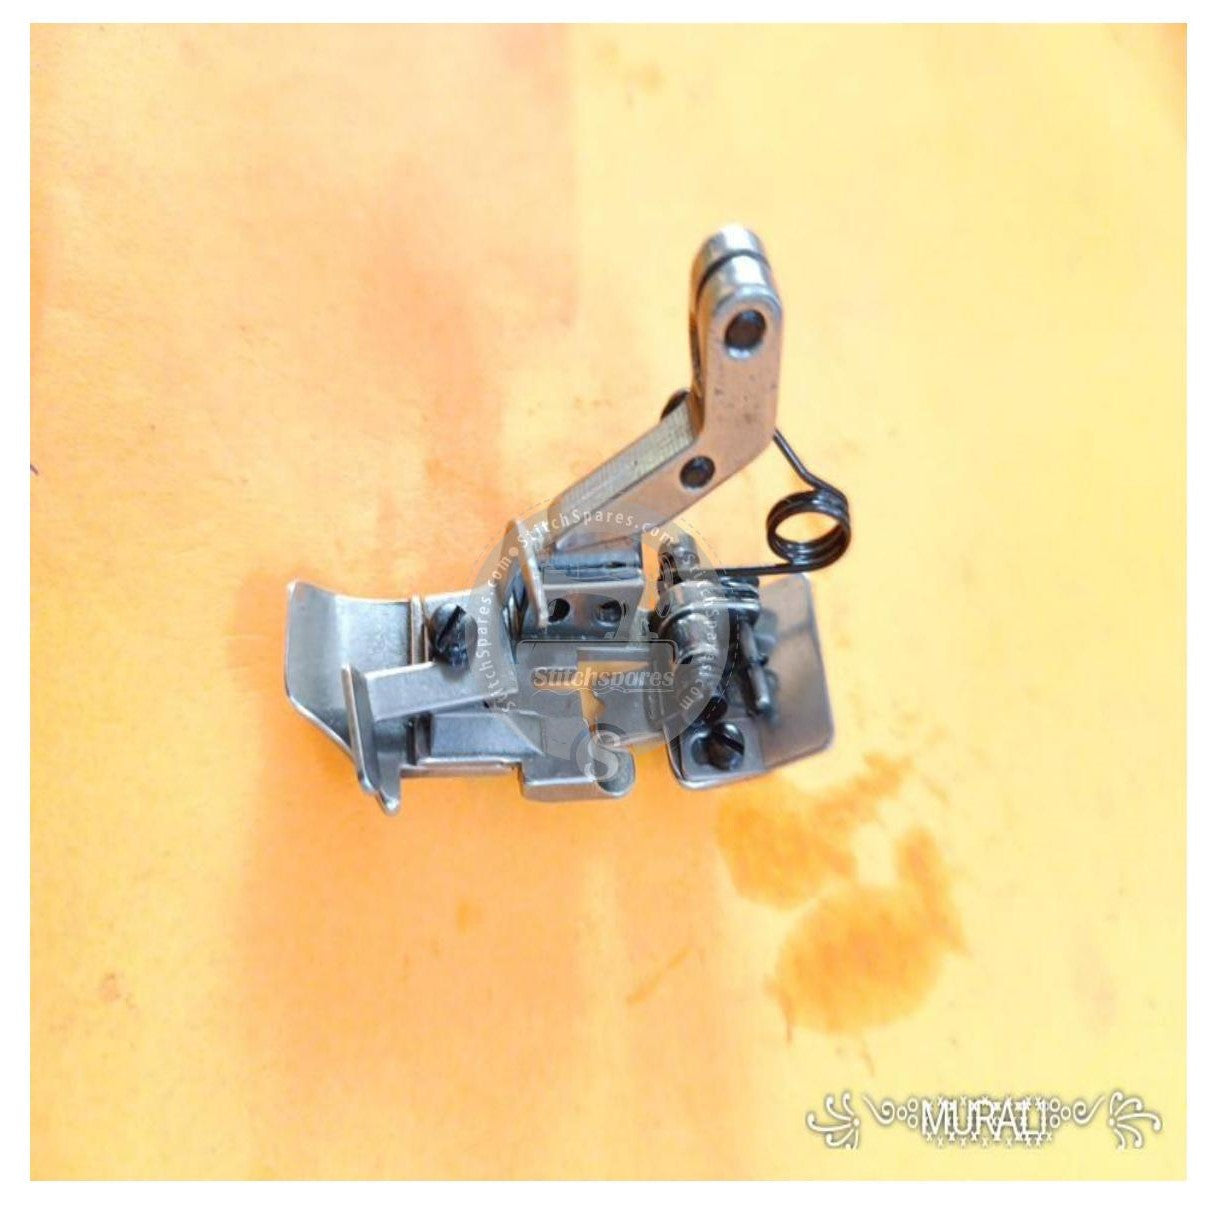 Prensatelas de 2157315 hilos 5 para YAMATO AZ-8500G, pieza de repuesto para máquina de coser Overlock